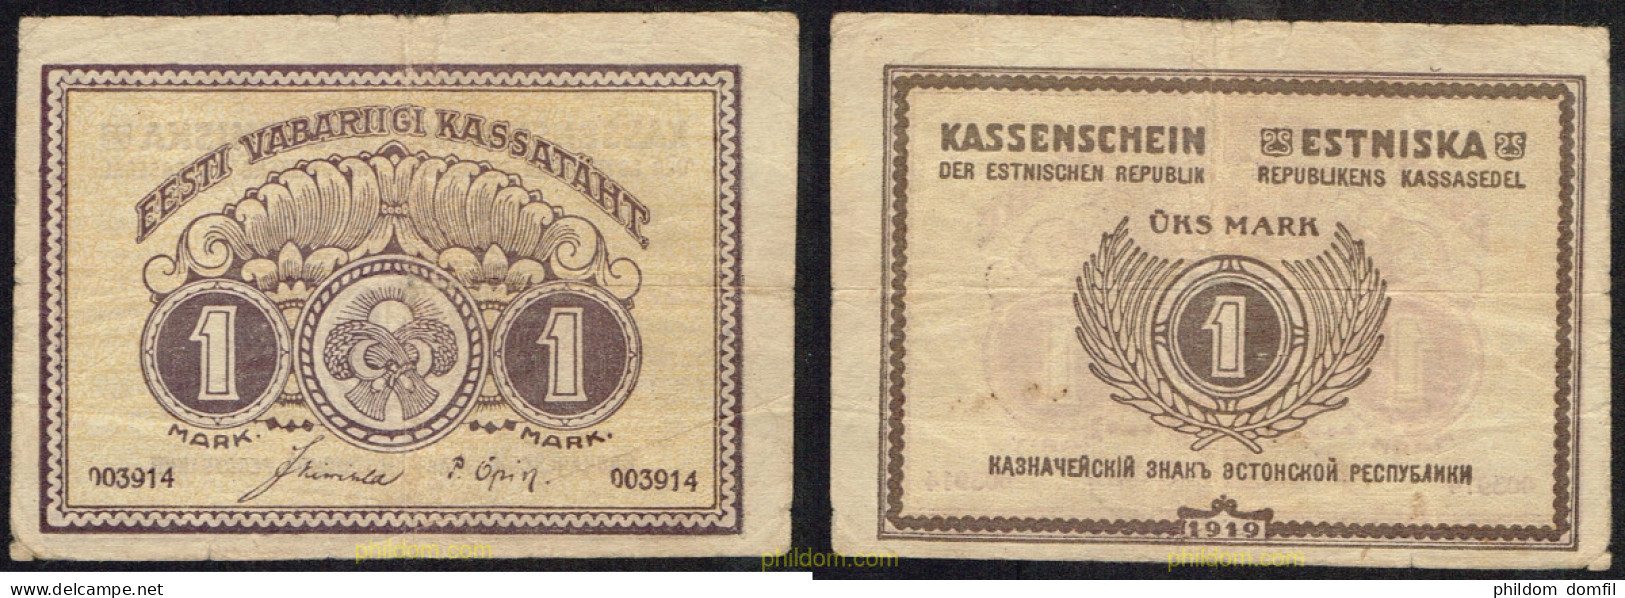 4783 ESTONIA 1919 ESTONIA 1 MARK 1919 - Estonie